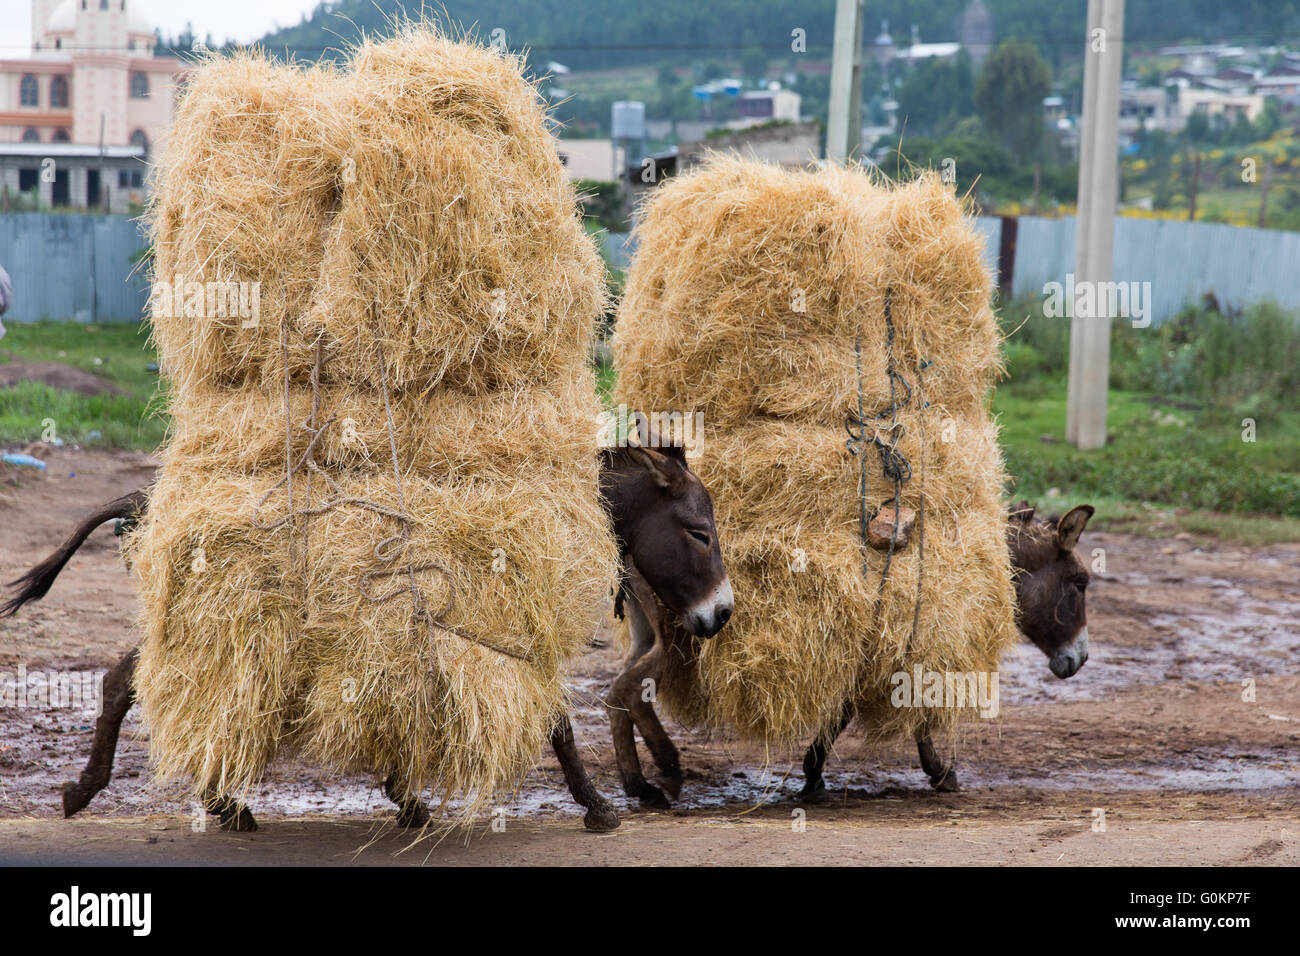 Debre Birhan, Amhara, Ethiopie, Octobre 2013 Des ânes portant des charges complètes de foin sur le marché pour l'alimentation animale. Photographie par Mike Goldwater Banque D'Images